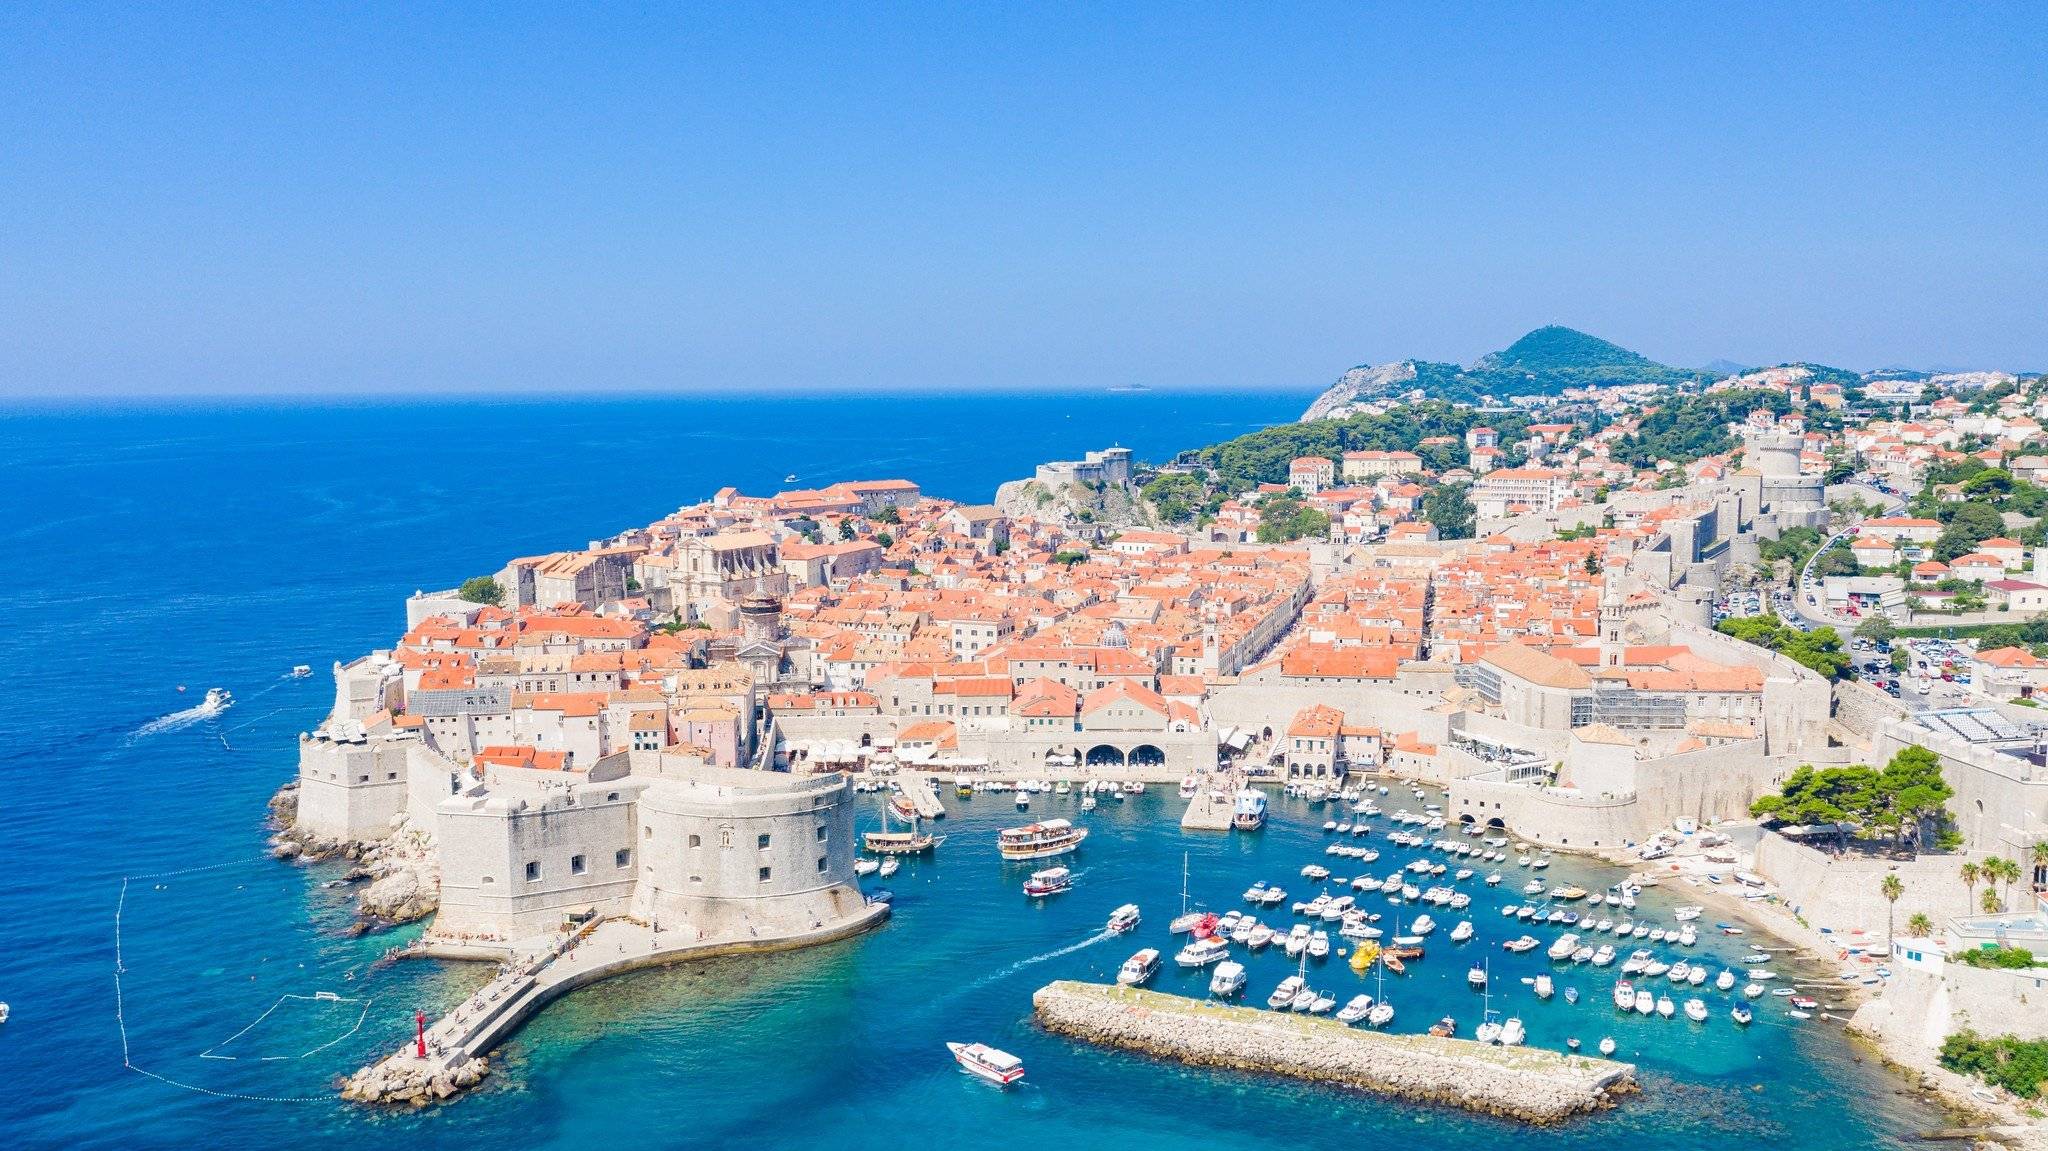 Llegada a Dubrovnik, conocida como la Perla del Adriático, en catamarán